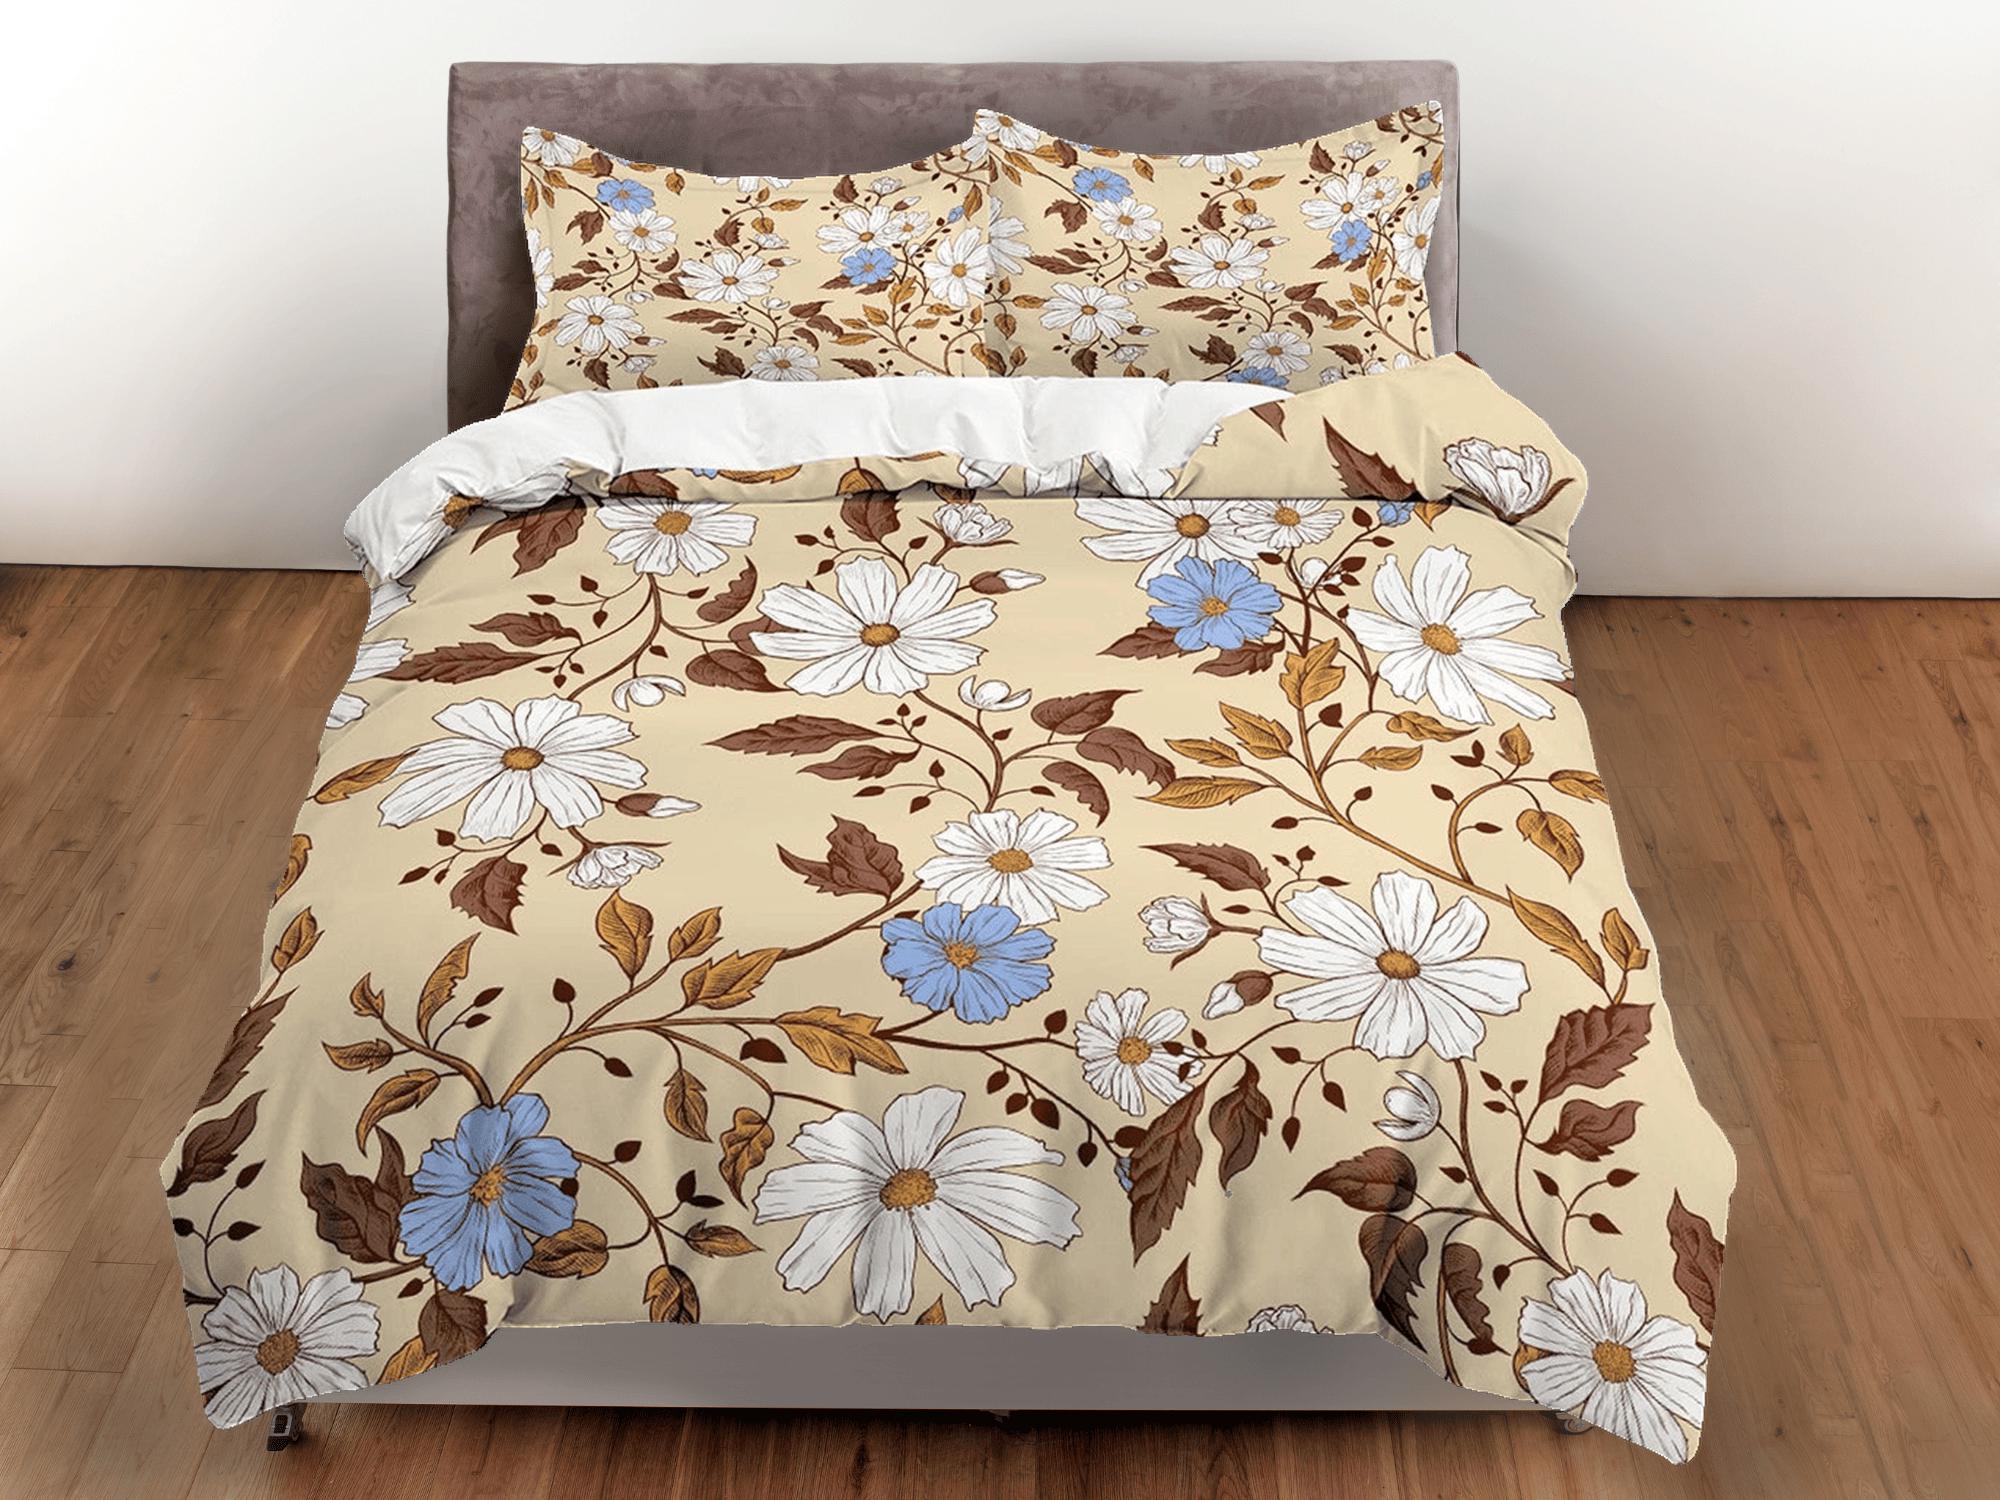 daintyduvet Retro daisy floral bedding, vintage duvet cover queen, king, boho duvet, designer bedding, aesthetic bedding, maximalist full size bedding